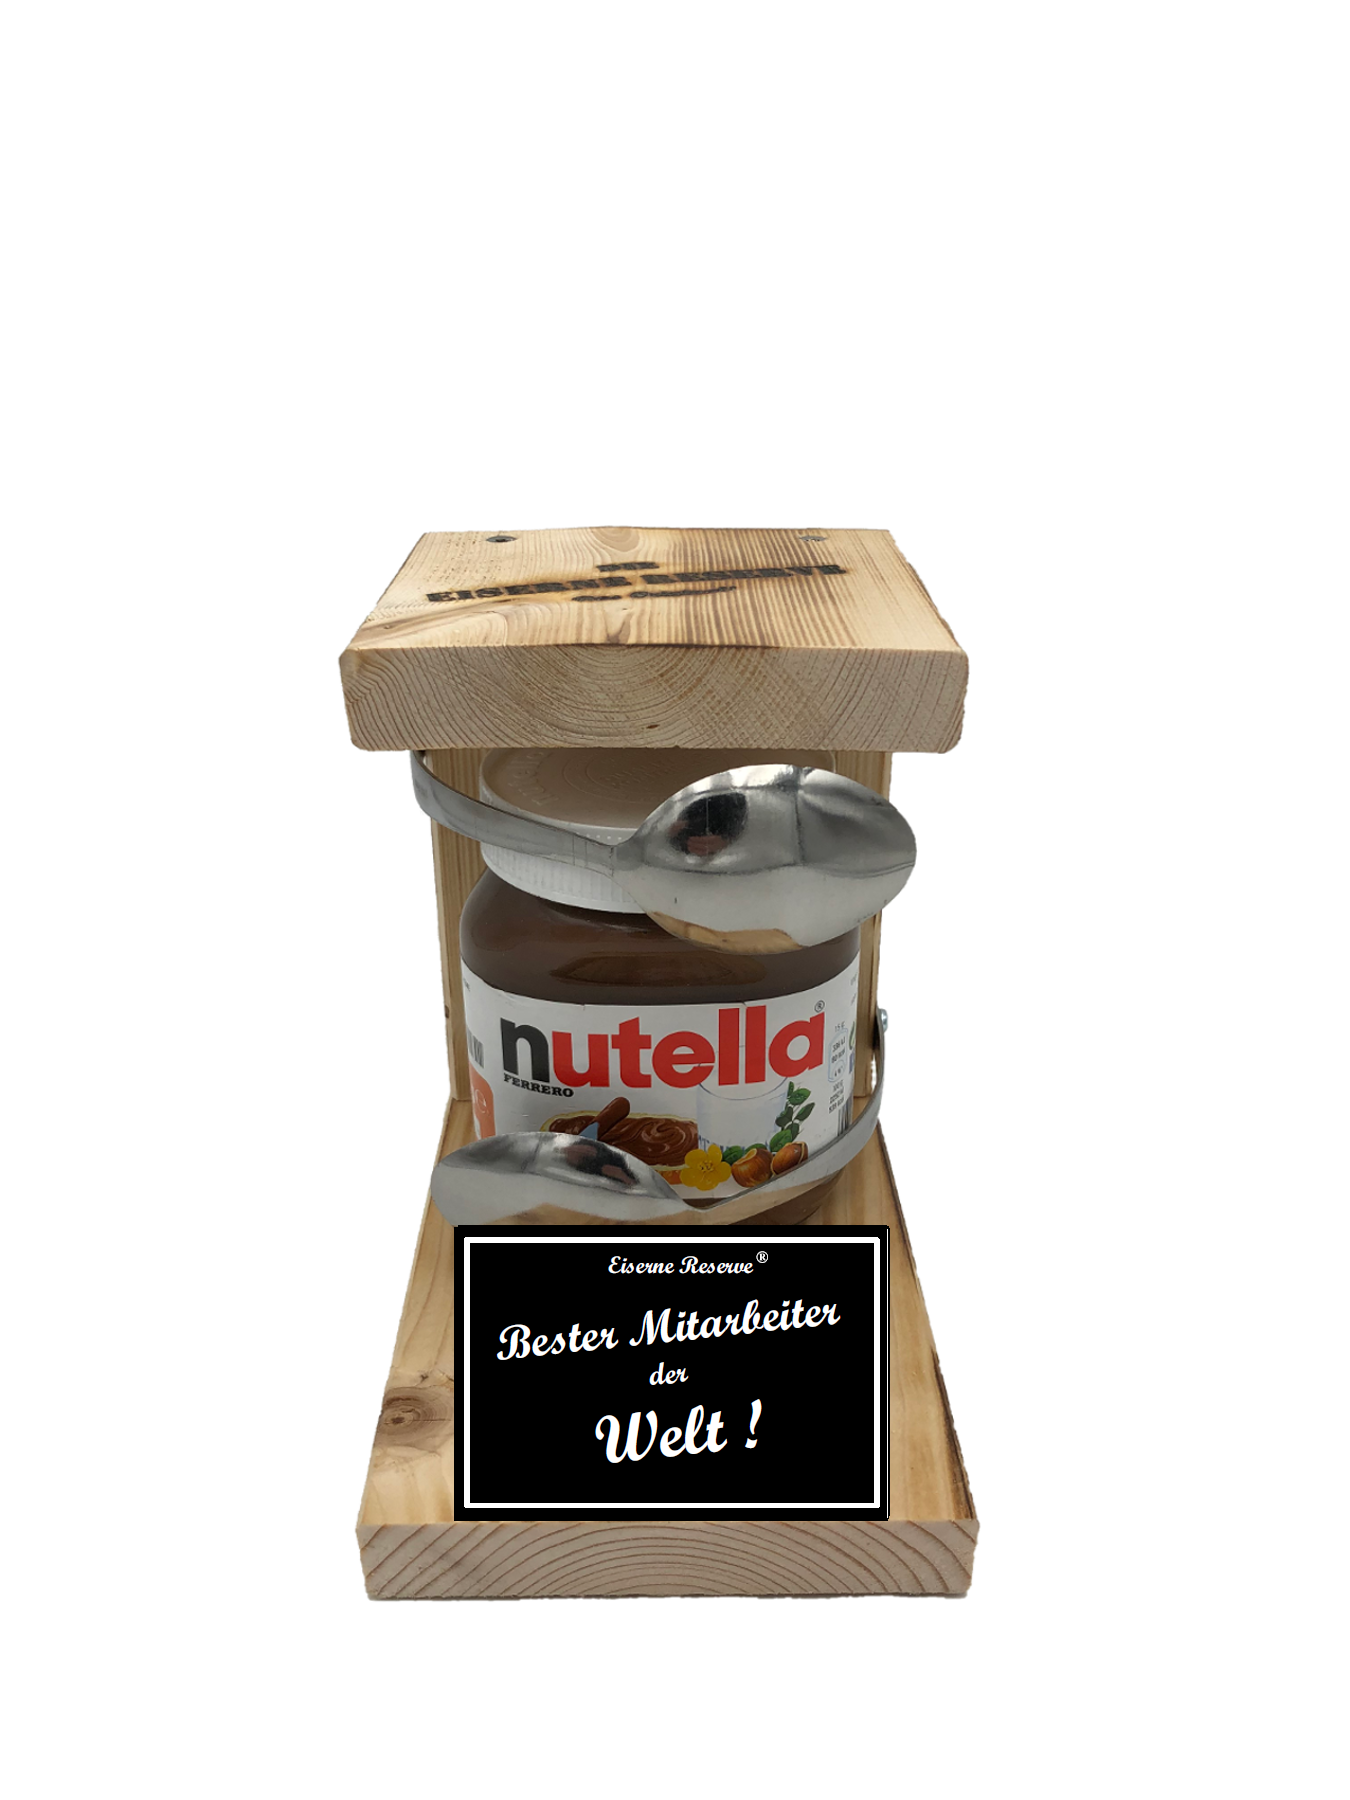 Bester Mitarbeiter der Welt Löffel Nutella Geschenk - Die Nutella Geschenkidee